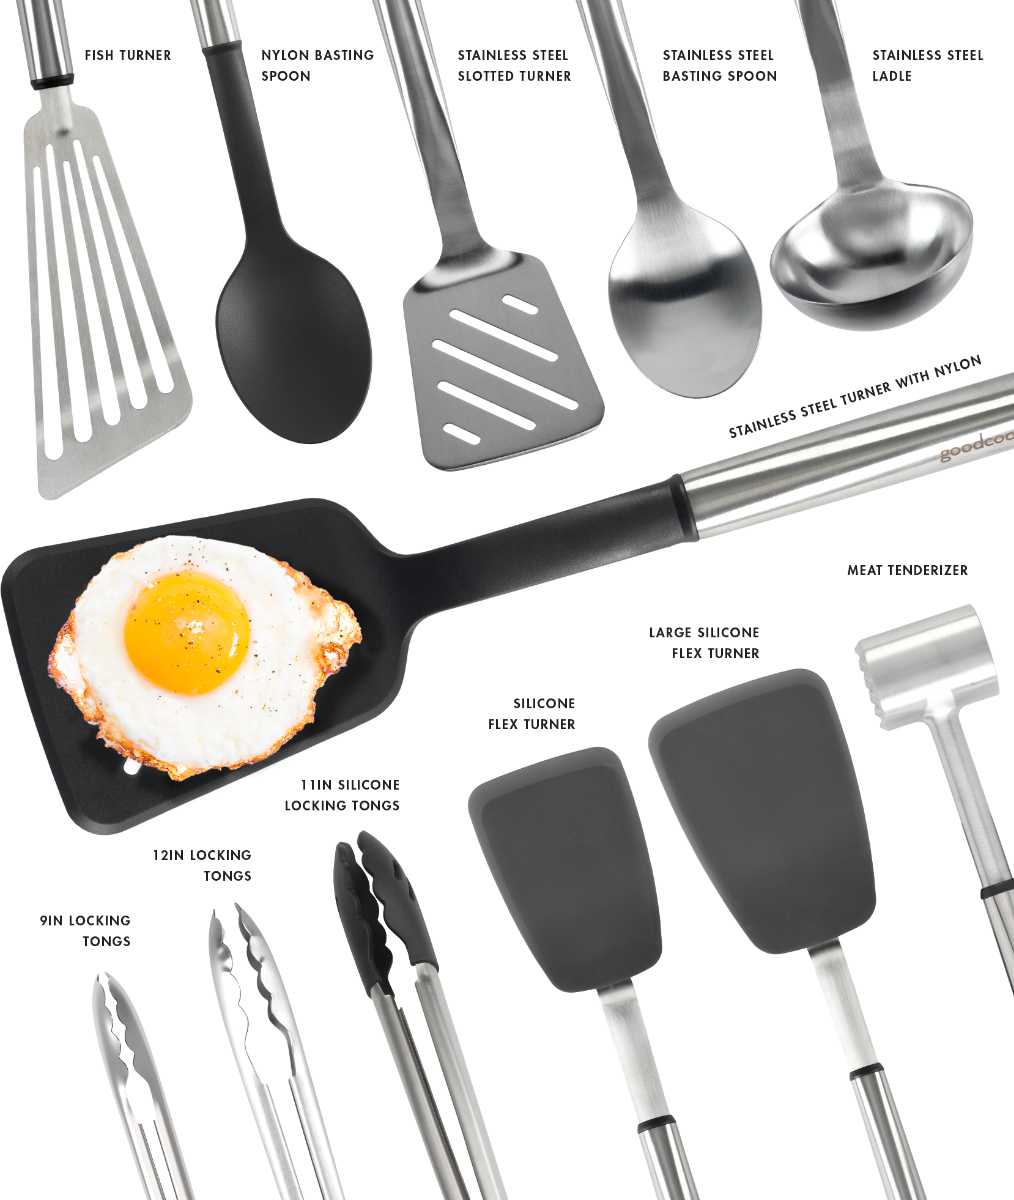 Cookware, Cooking Utensils, Kitchen Supplies & Gourmet Foods